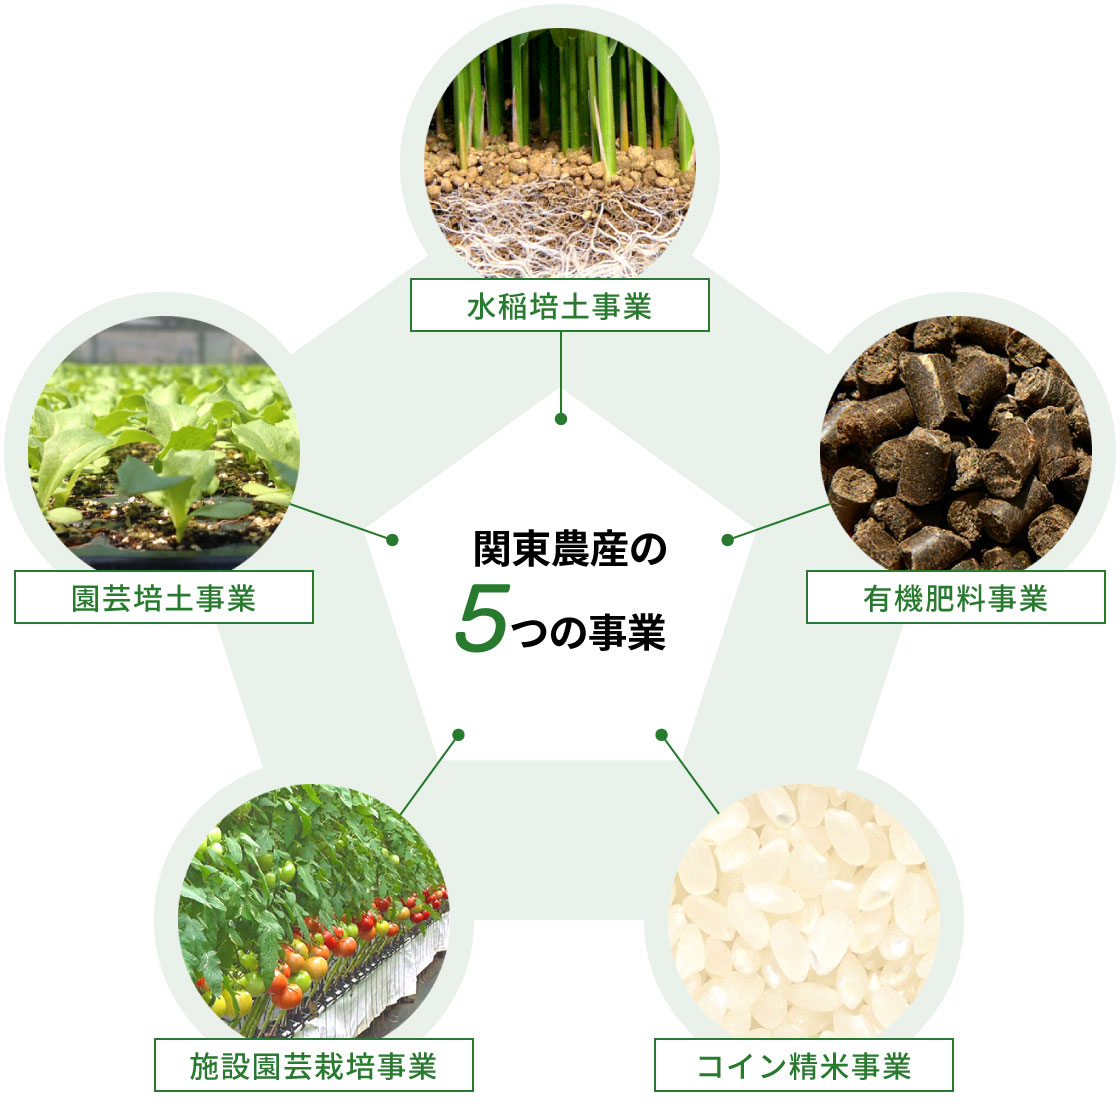 関東農産の5つの事業